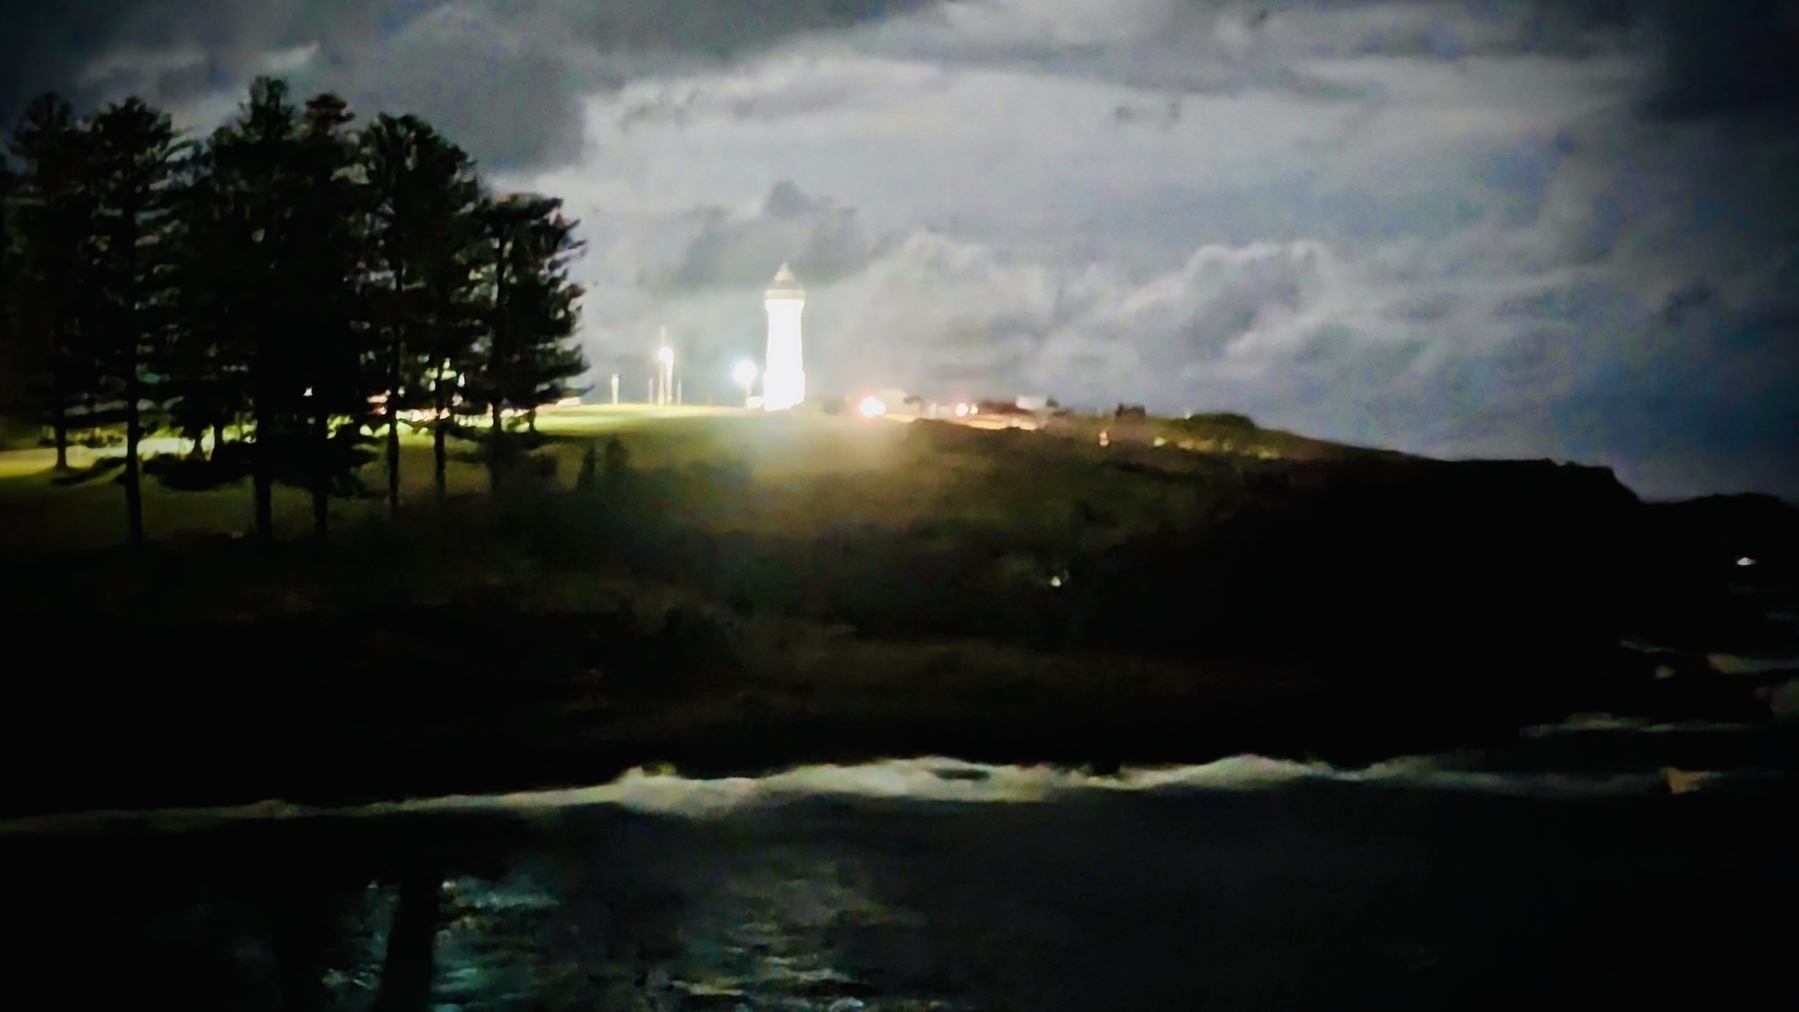 A lighthouse glowing brightly on a dark headland 